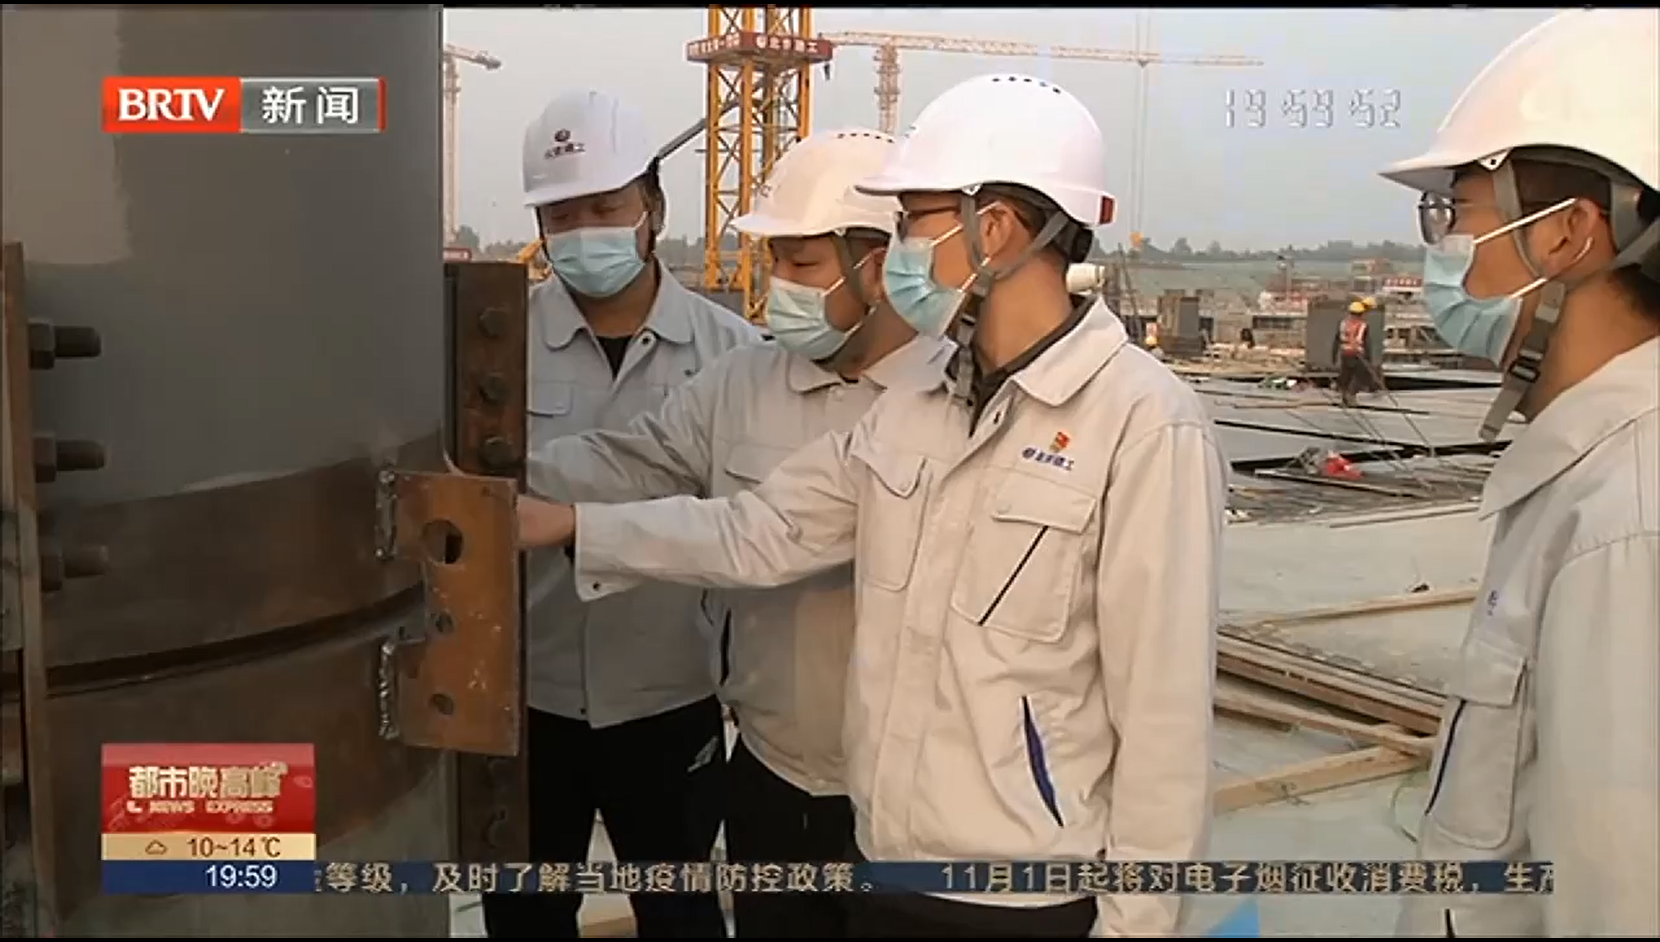 [都市晚高峰]新国展二期工程东区部分完成首根钢梁吊装_2022-10-27_20_18_48